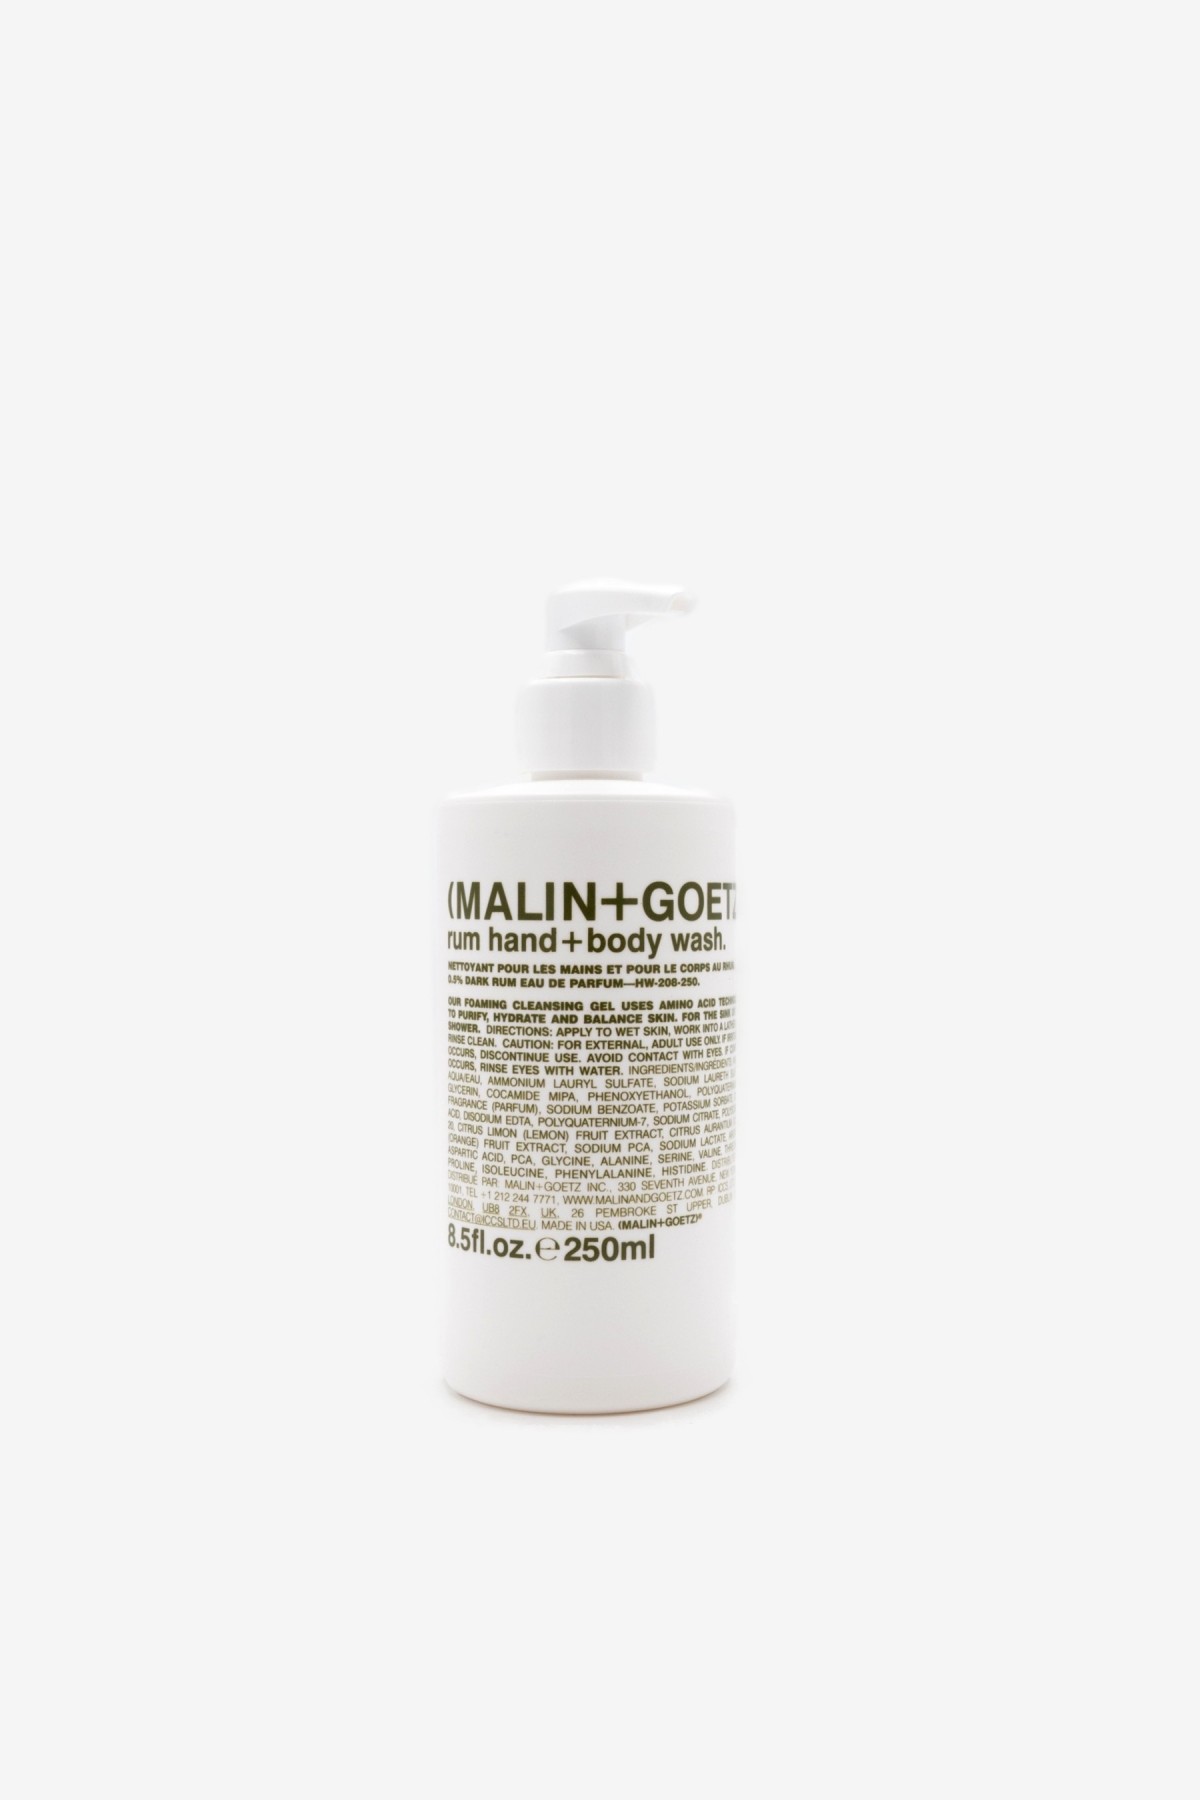 Malin+Goetz Rum Hand + Body Wash 250ml in 